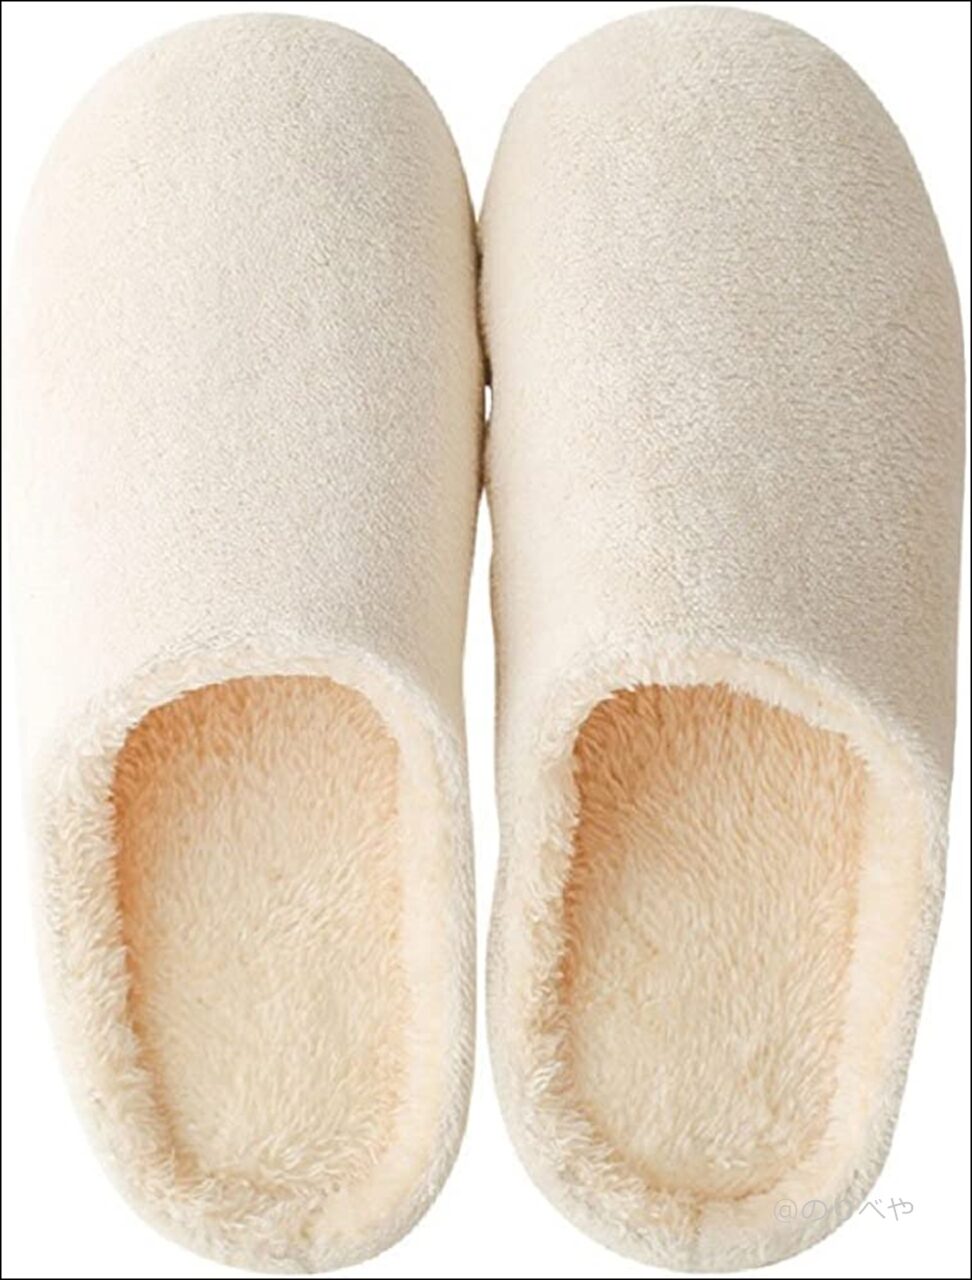 【Amazon】[HAPLUE] スリッパ 室内履き ルームシューズ 暖かい 滑らない 歩きやすい 抗菌衛生 洗濯可